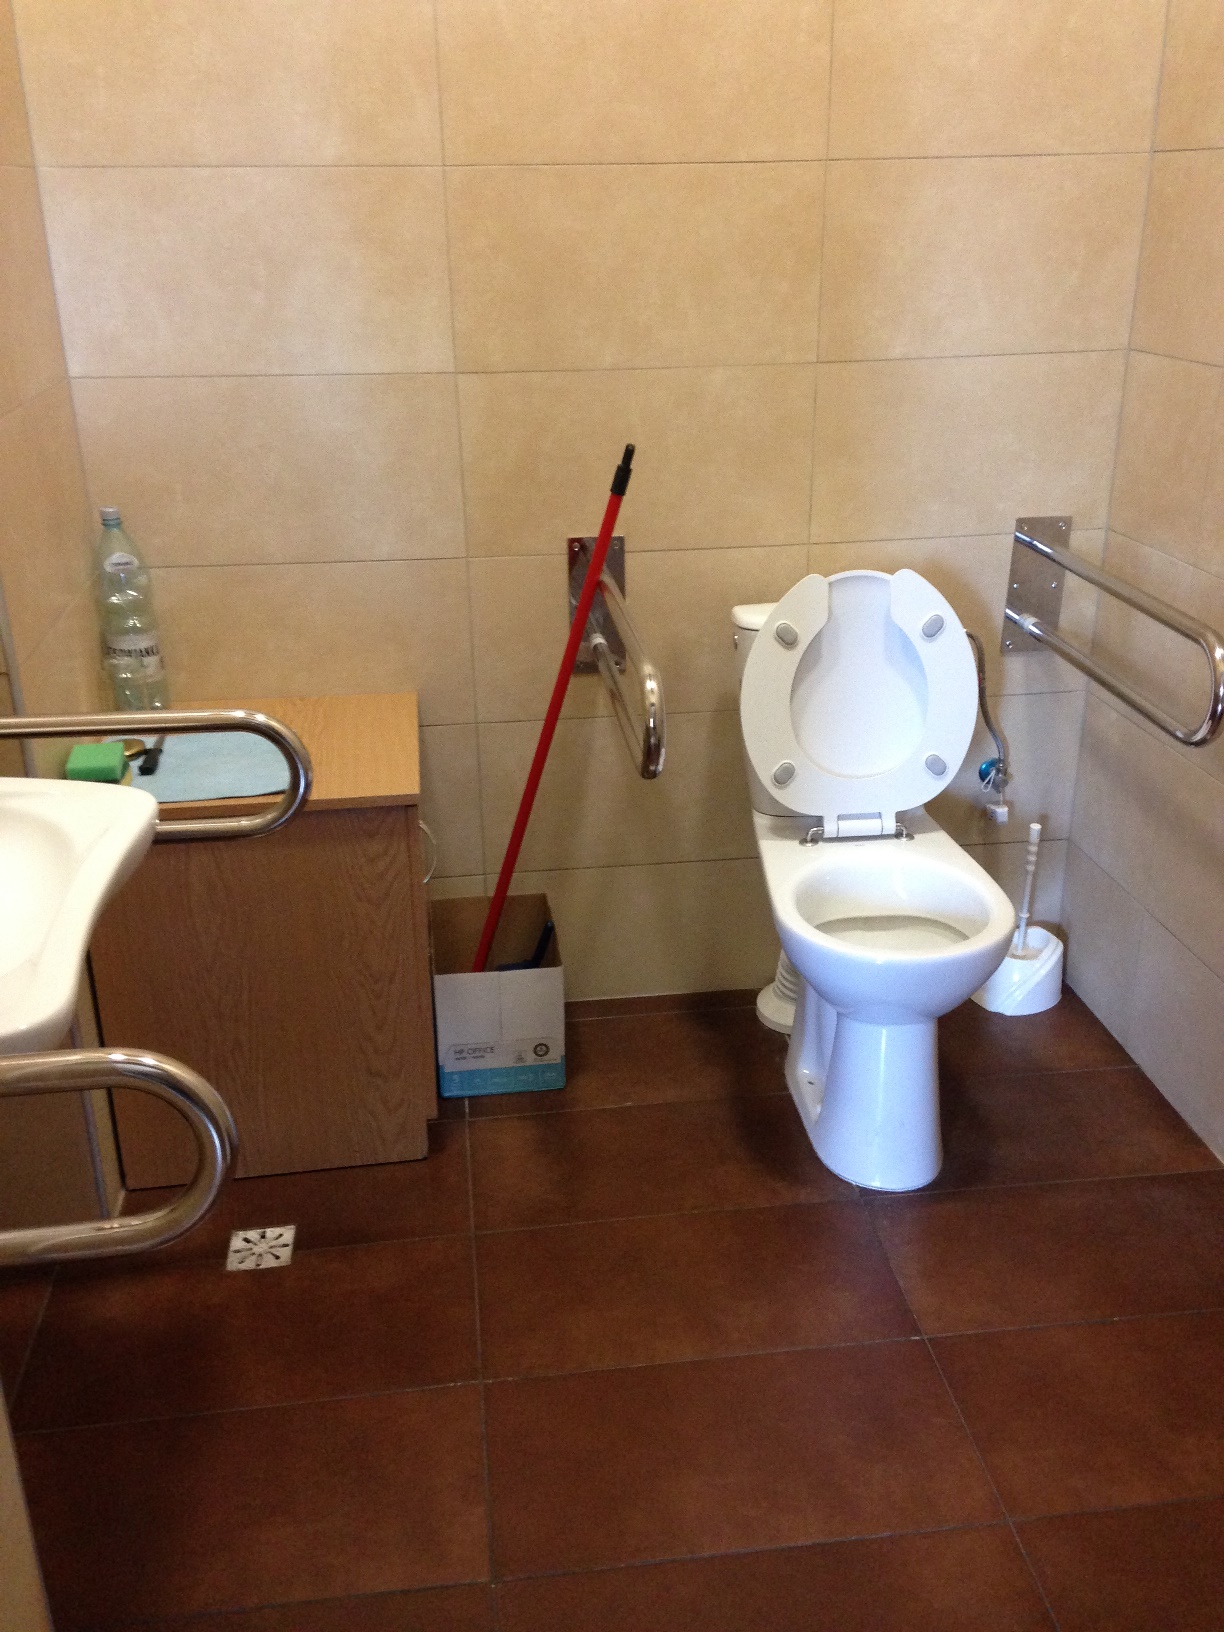 Wnętrze toalety dla niepełnosprawnych na 1 piętrze - dodatkowe wyposażenie.